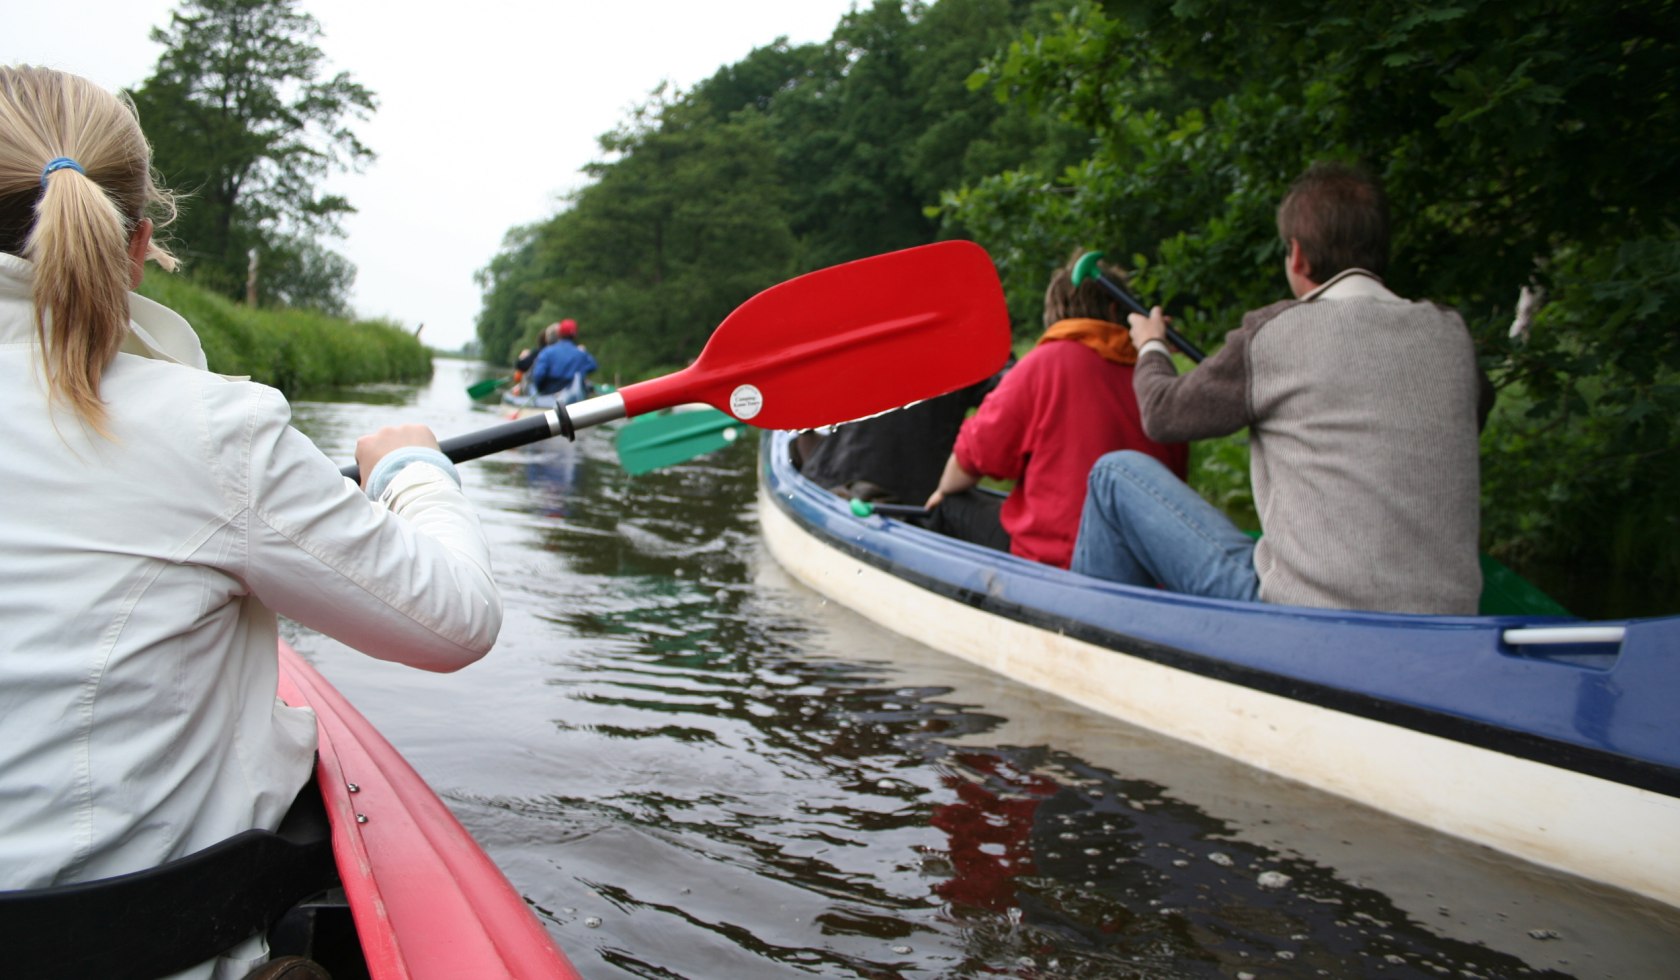 Canoe group in the Mittelweser region, © Mittelweser Touristik GmbH